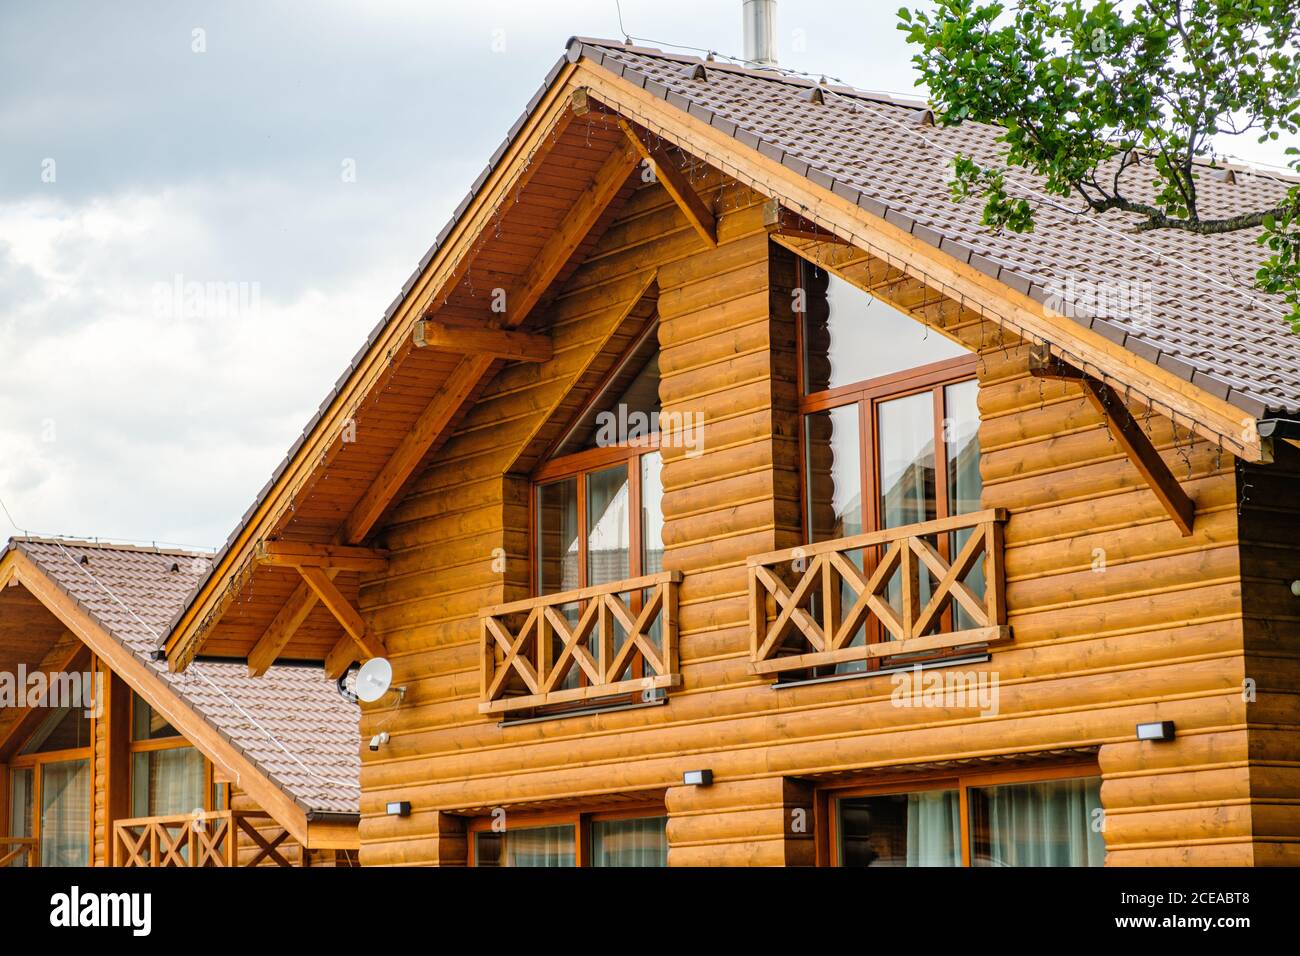 Modernes Holzhaus mit großen Fenstern und Balkon. Konzept des Baus von Familienhäusern, Pensionen oder Hütten auf dem Land. Bau von Häusern Stockfoto